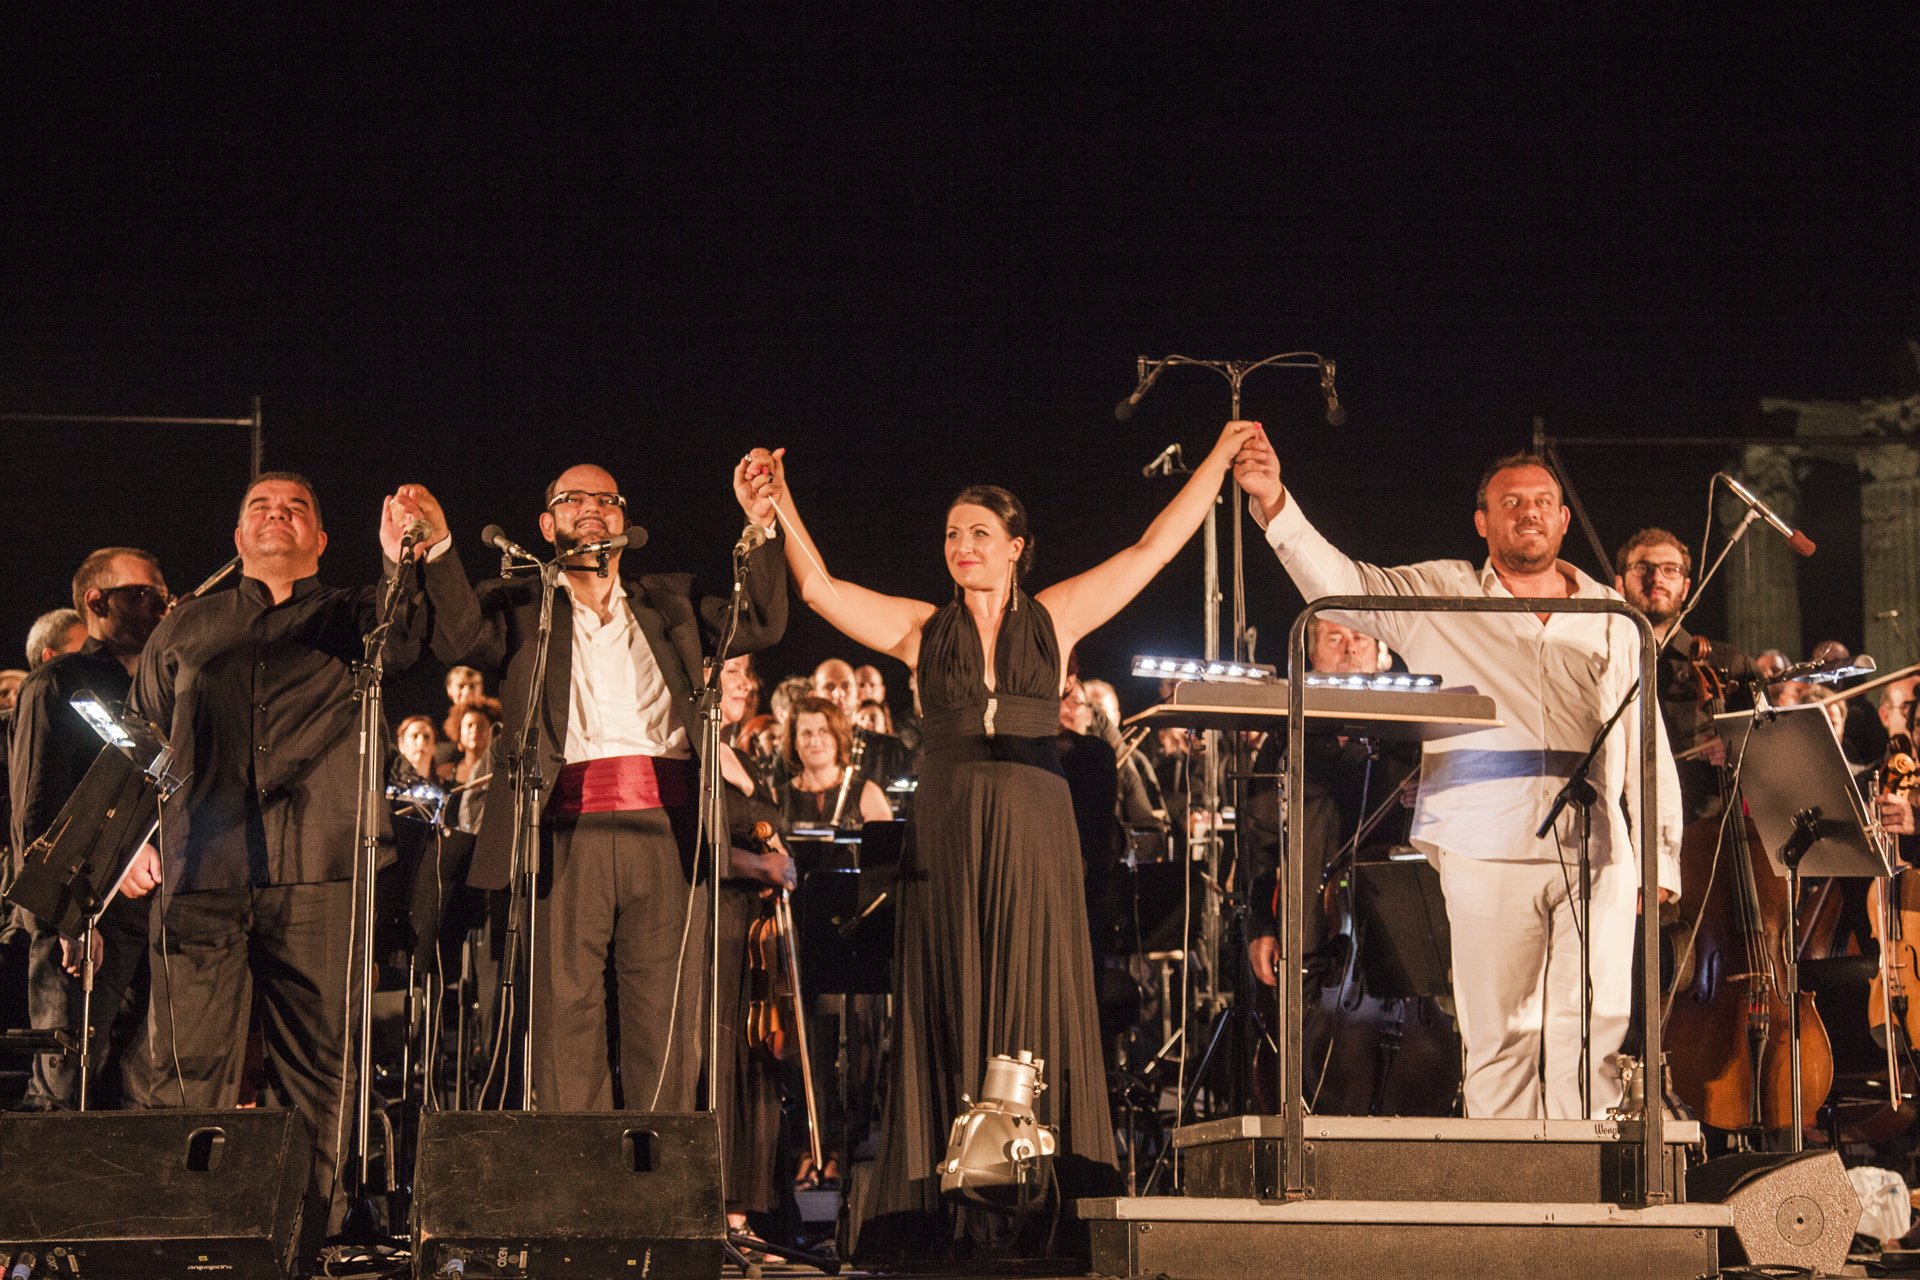 Μαγική βραδιά στο Ολυμπιείον  3000 φίλοι της όπερας χειροκρότησαν θερμά την Ορχήστρα, τη Χορωδία και τους Σολίστ της Εθνικής Λυρικής Σκηνής